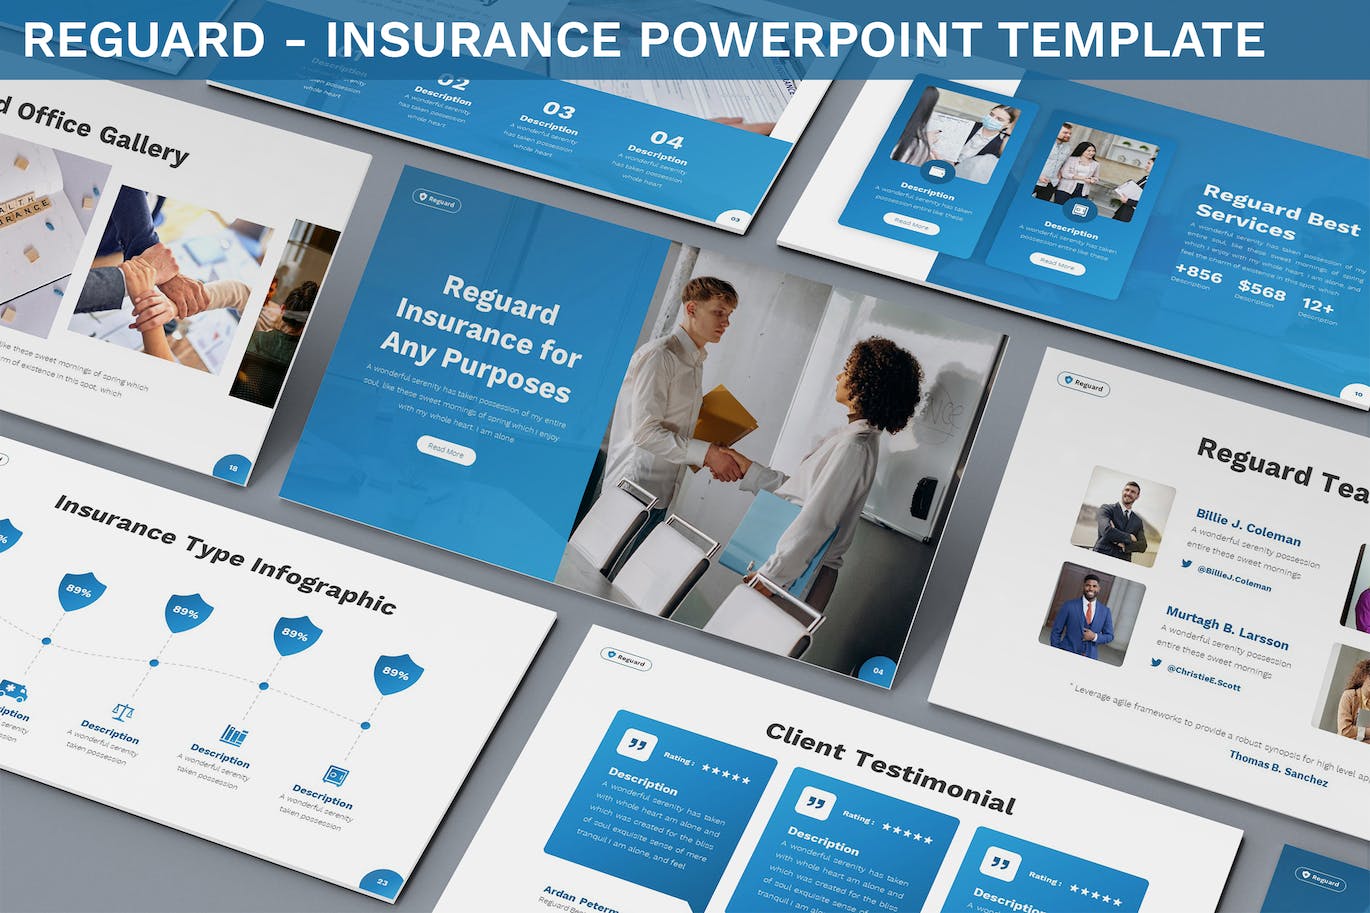 安全保险幻灯片演示PPT模板 Reguard – Insurance Powerpoint Template 幻灯图表 第1张